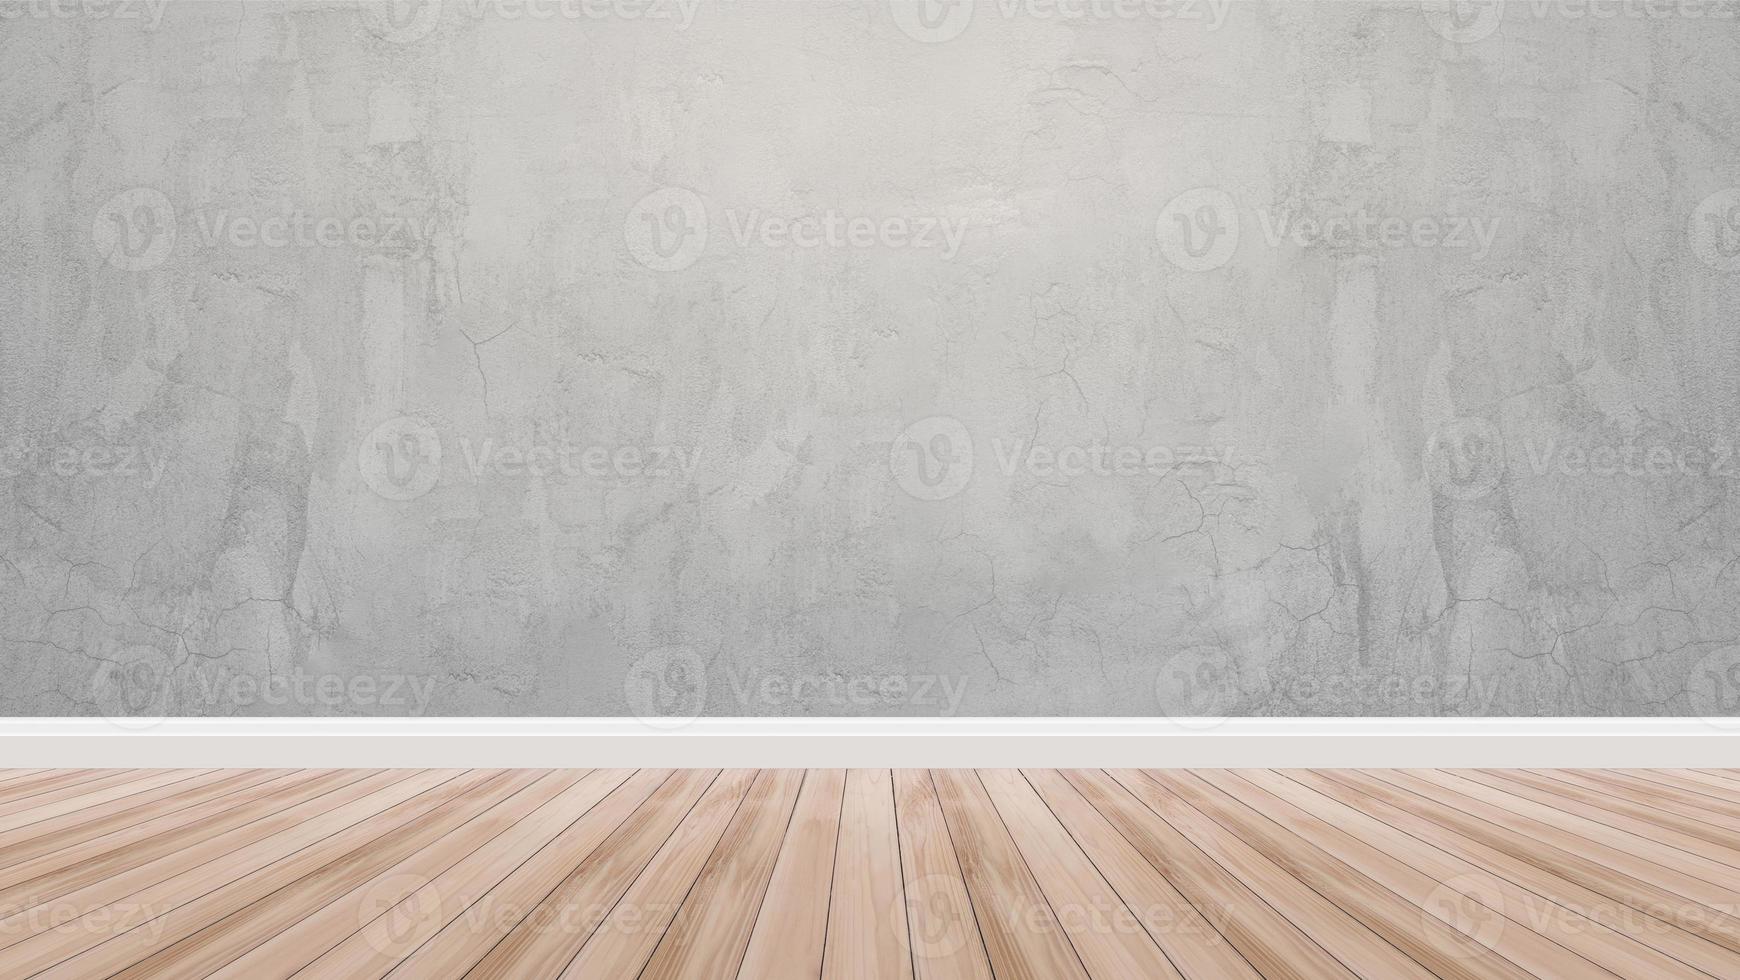 piso de madera marrón y decoración de pared de cemento diseño de fondo de la habitación fondo de la habitación fondo de papel tapiz abstracto foto